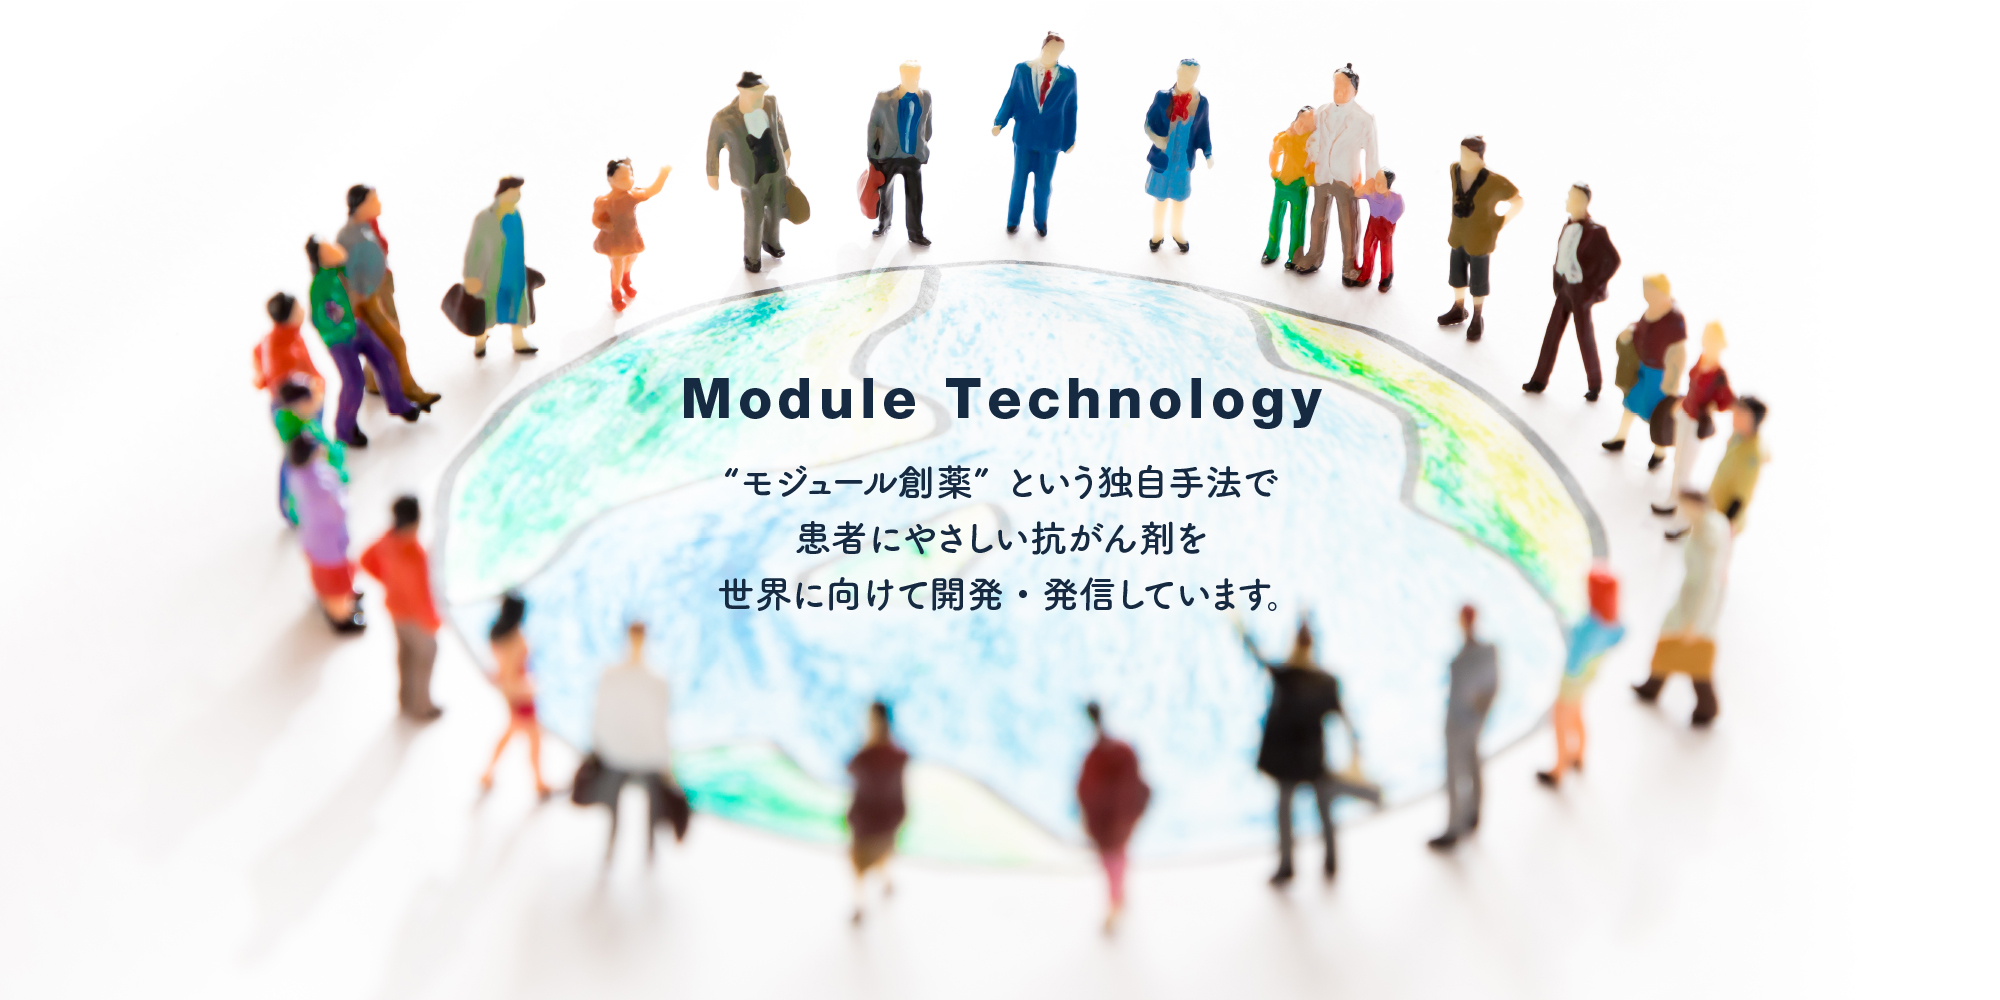 「Module Technology」－“モジュール創薬” という独自手法で患者にやさしい抗がん剤を世界に向けて開発・発信しています。